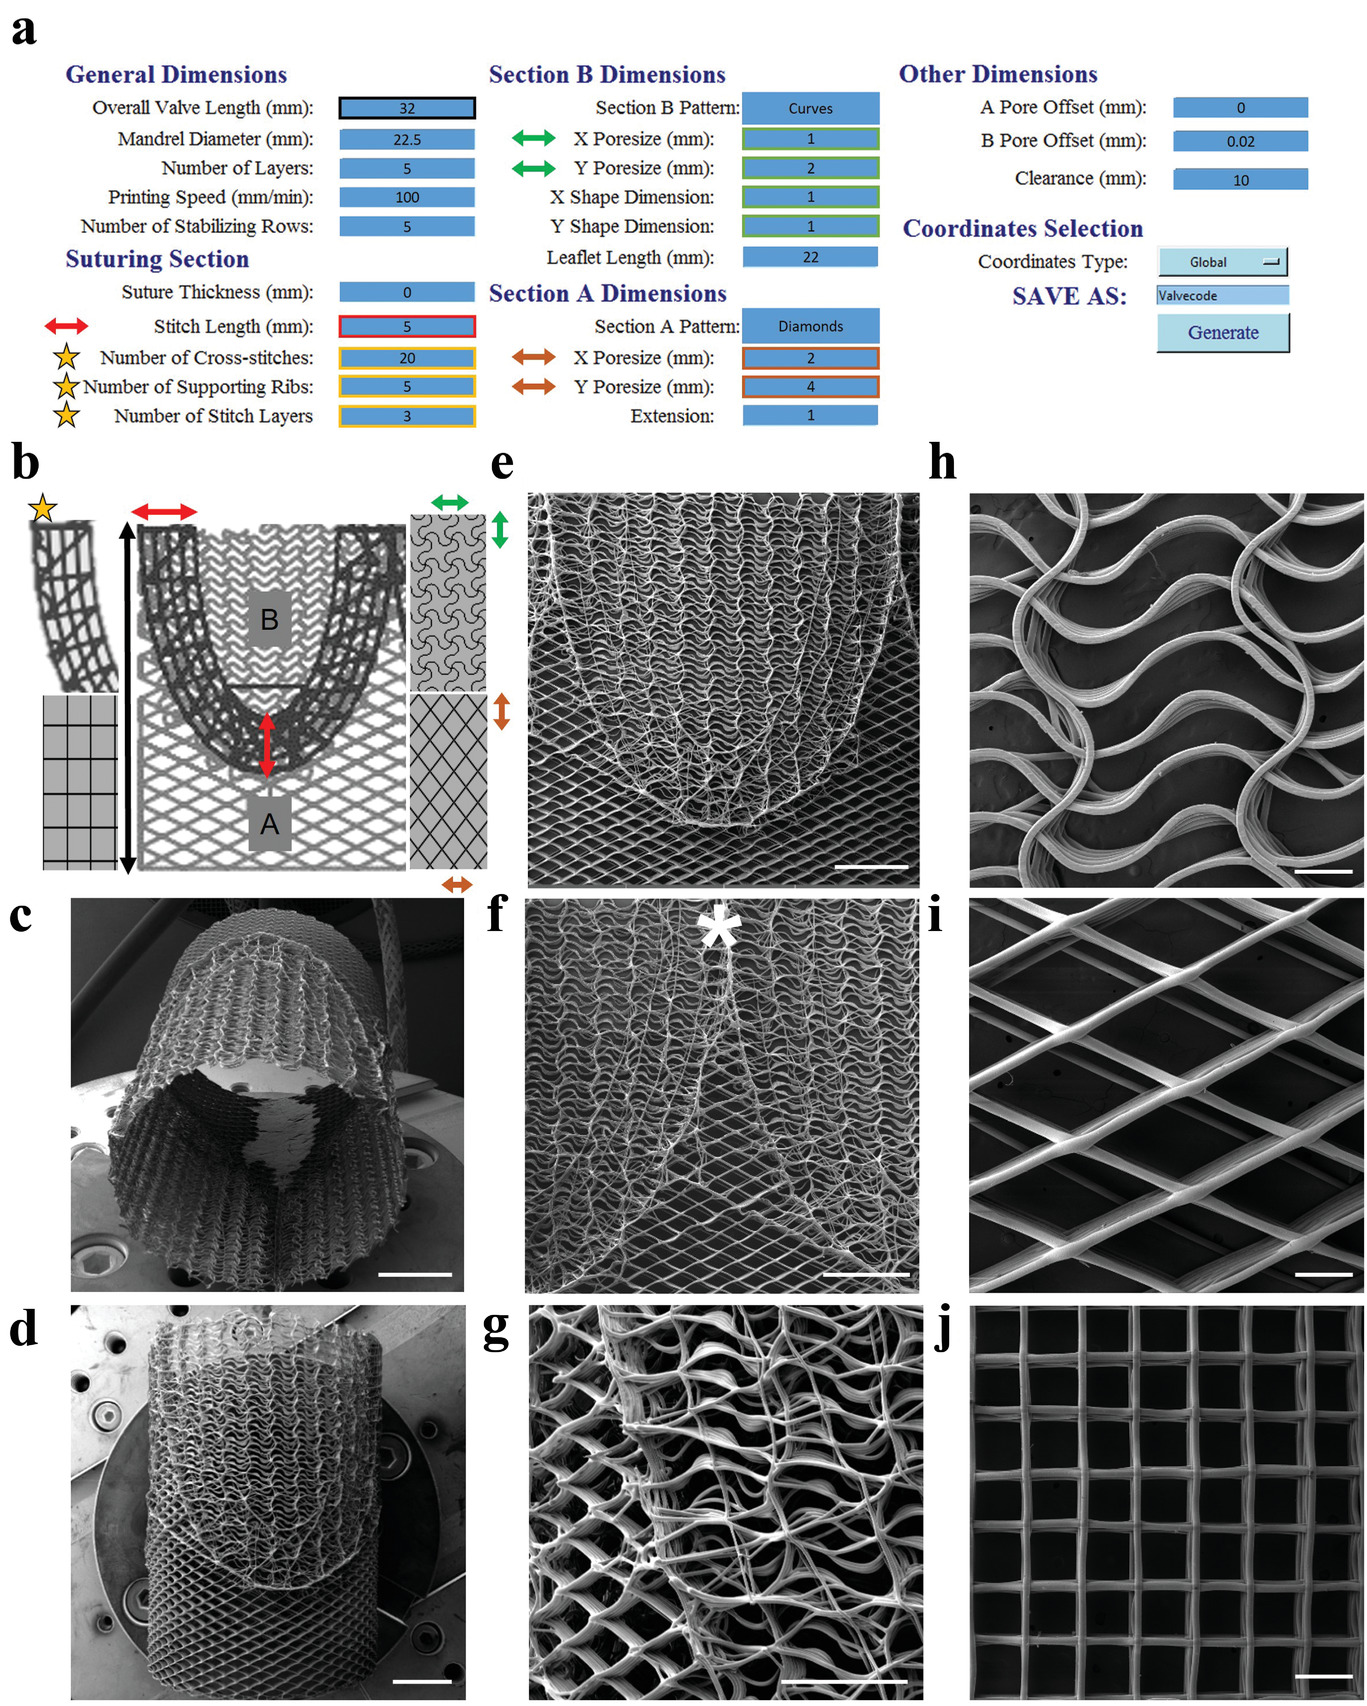 Conception et fabrication d'échafaudages tubulaires spatialement hétérogènes pour l'ingénierie tissulaire des valves cardiaques.  Image via des matériaux fonctionnels avancés.